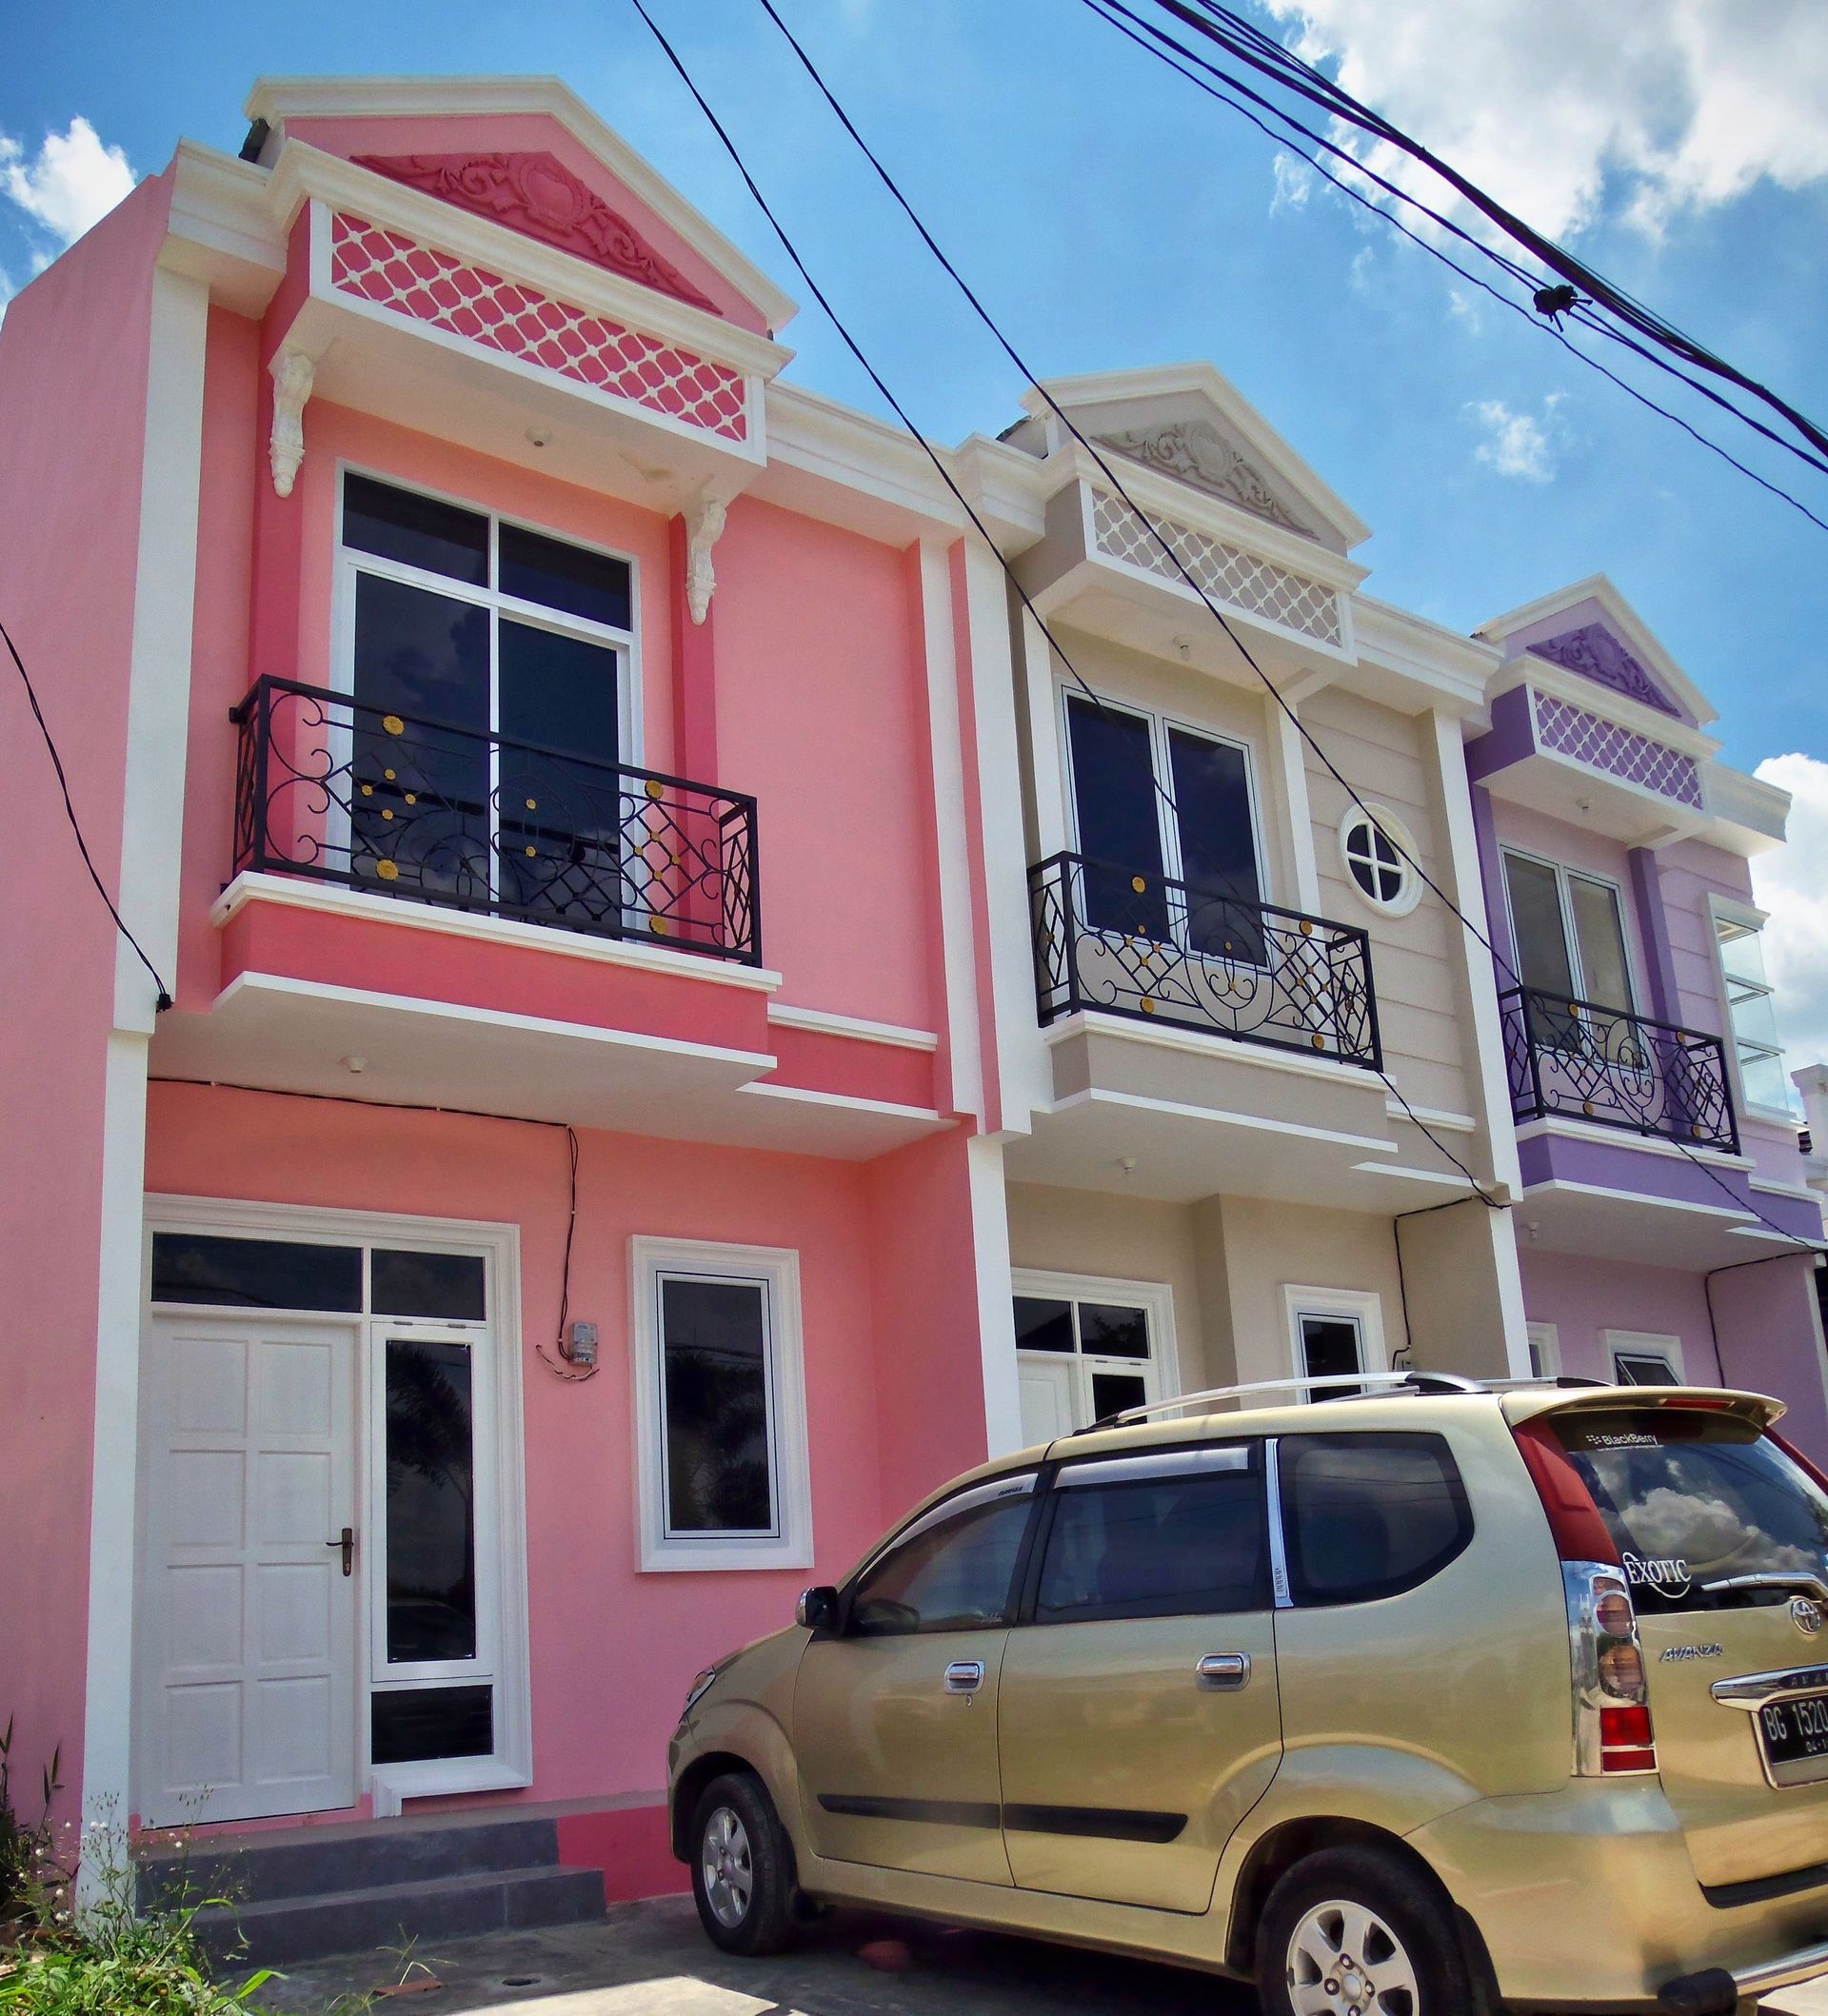 rumah compact townhouse perumahan caledonia residence palembang